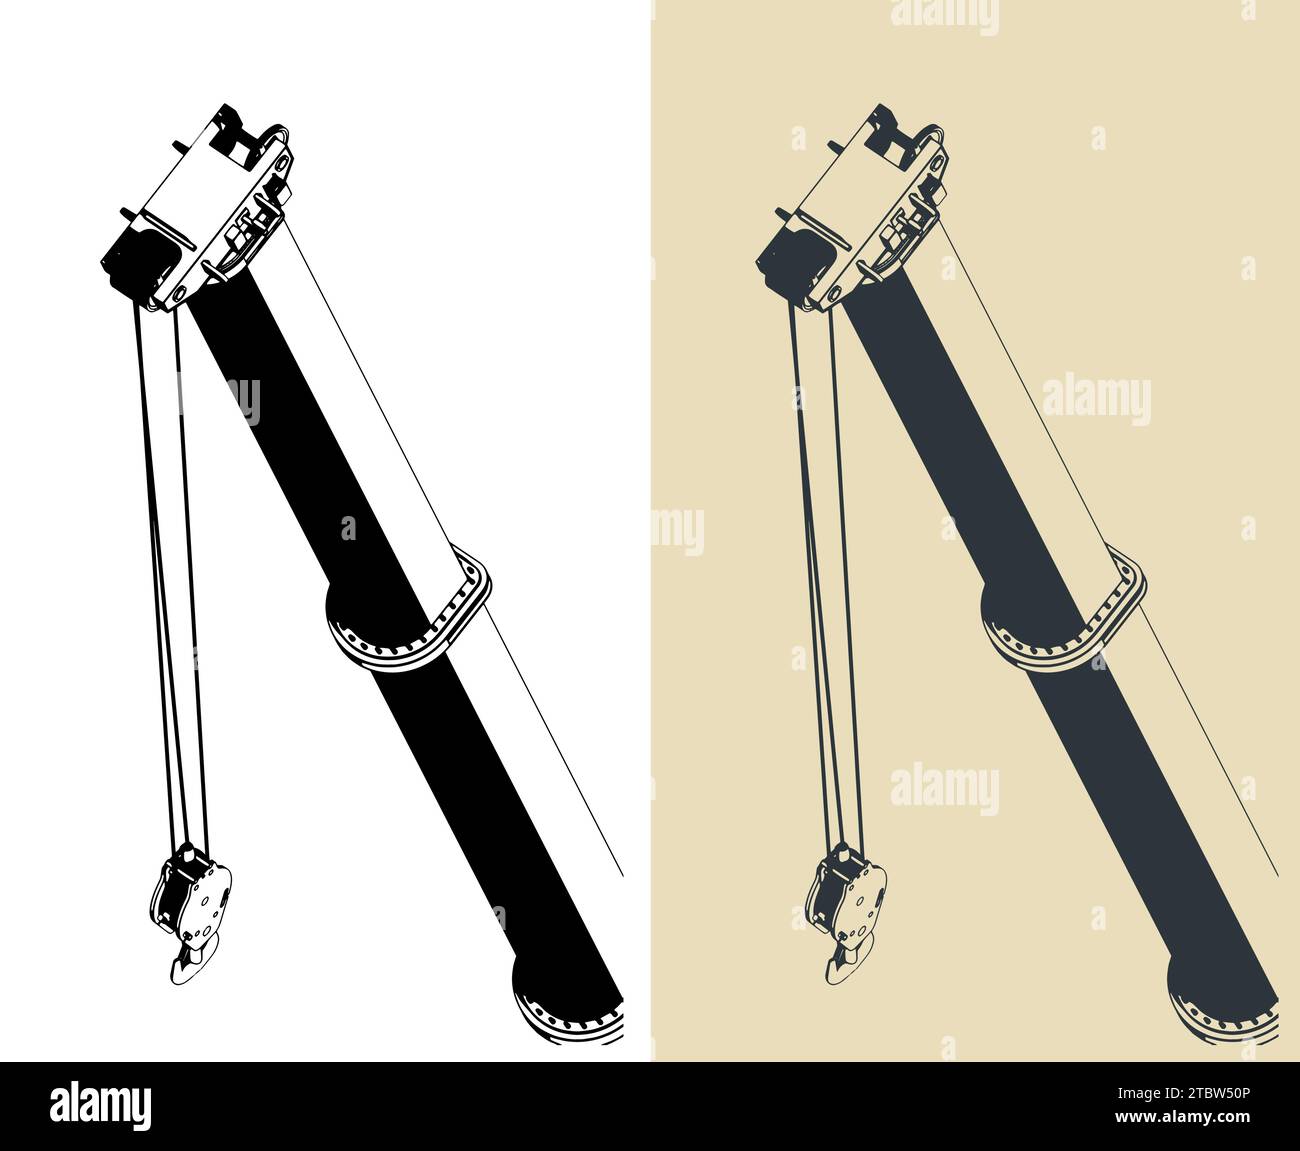 Illustrazioni vettoriali stilizzate di gru mobile potente braccio telescopico lungo da vicino Illustrazione Vettoriale